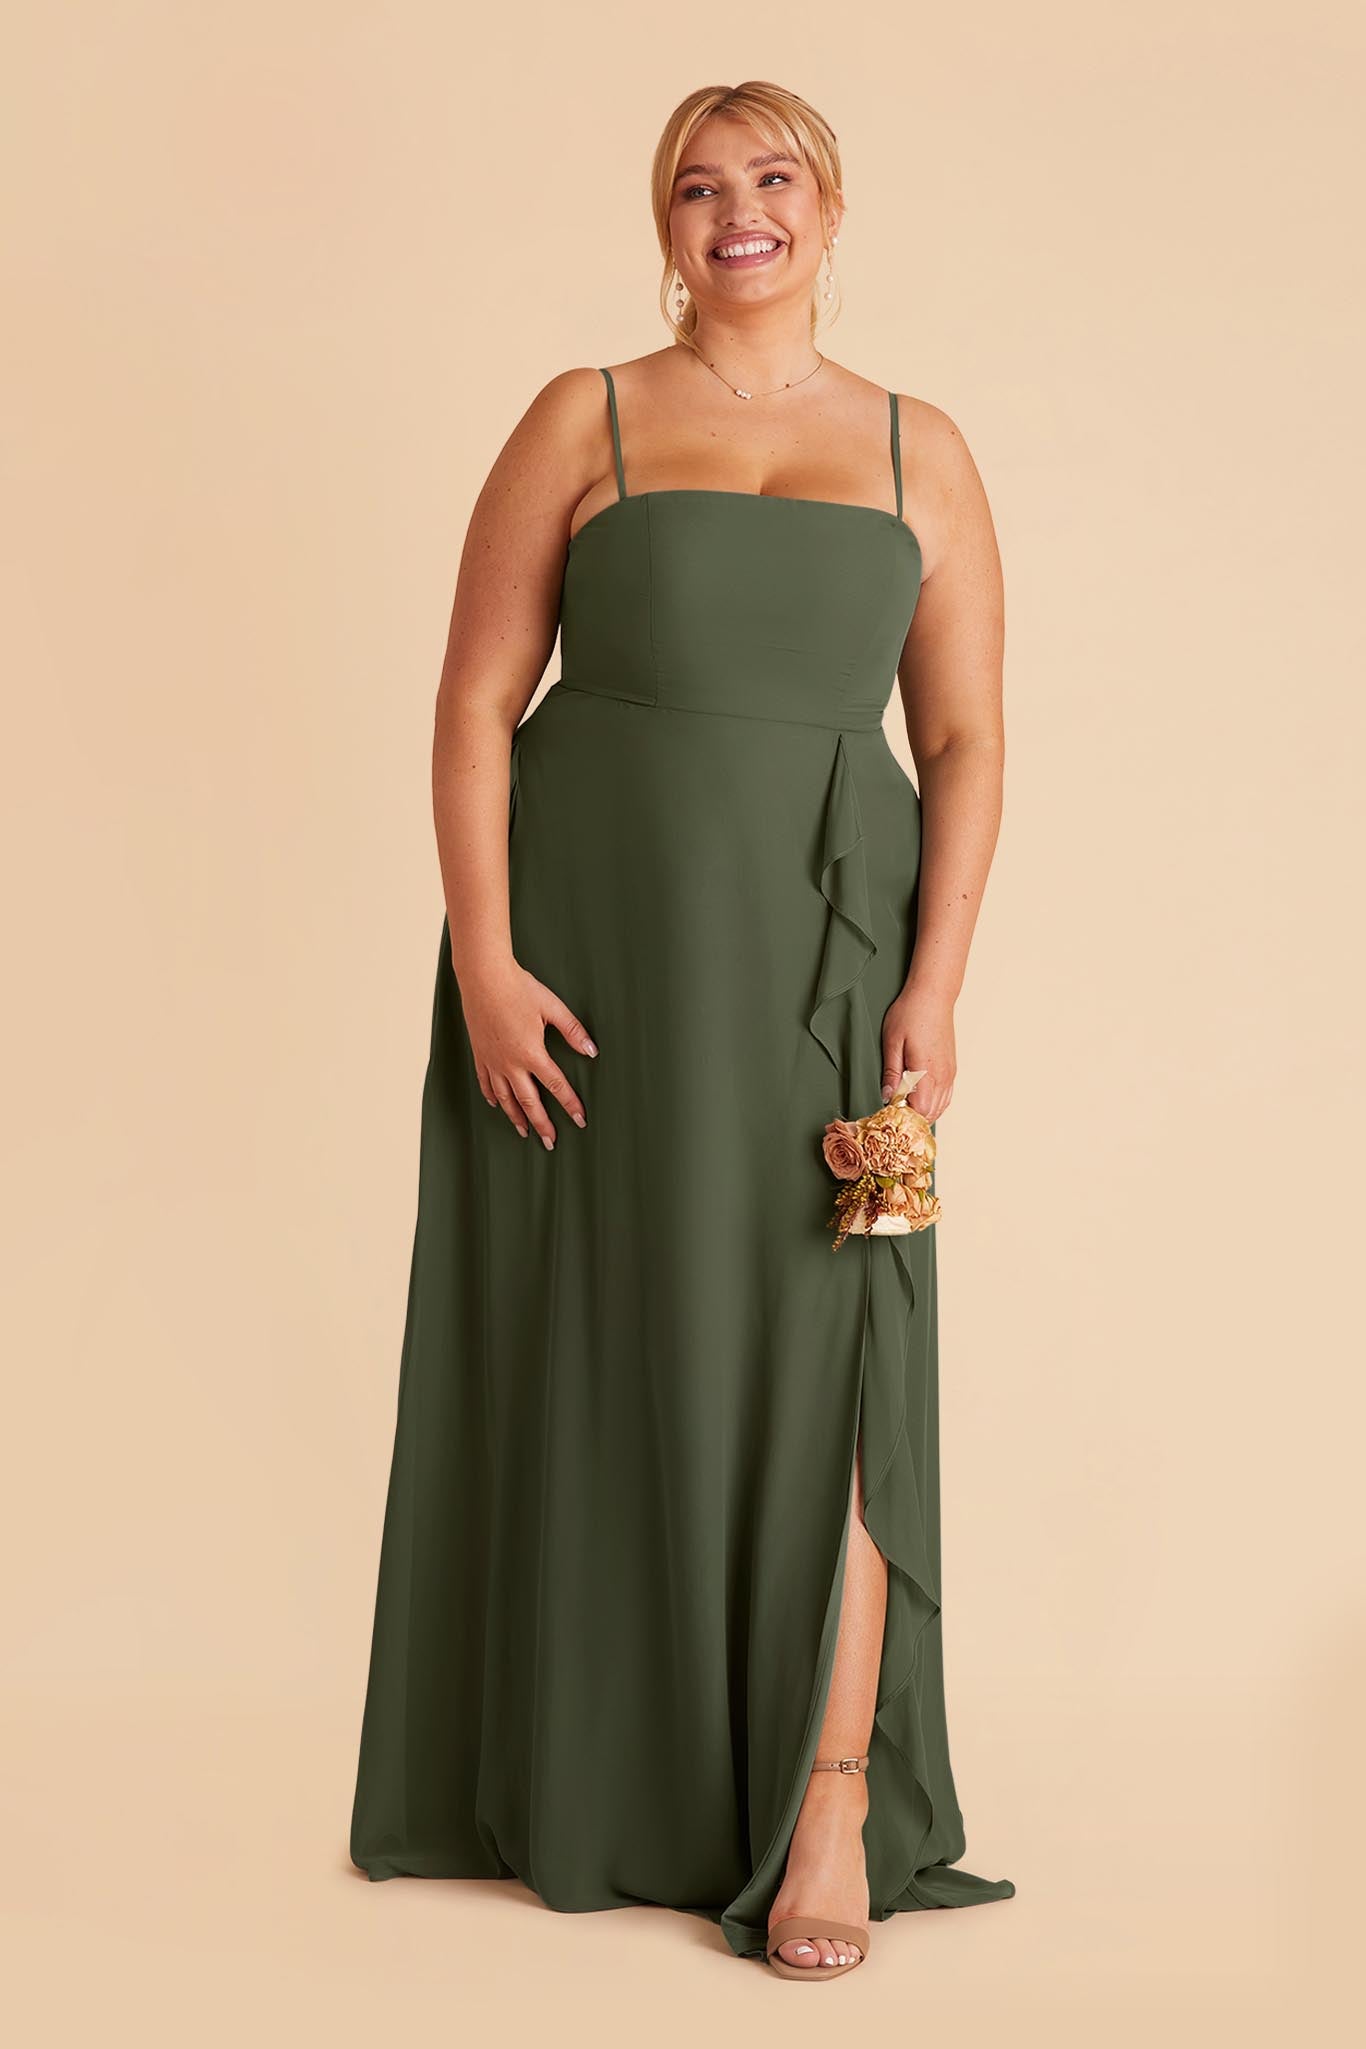 Winnie Convertible Chiffon Dress - Olive